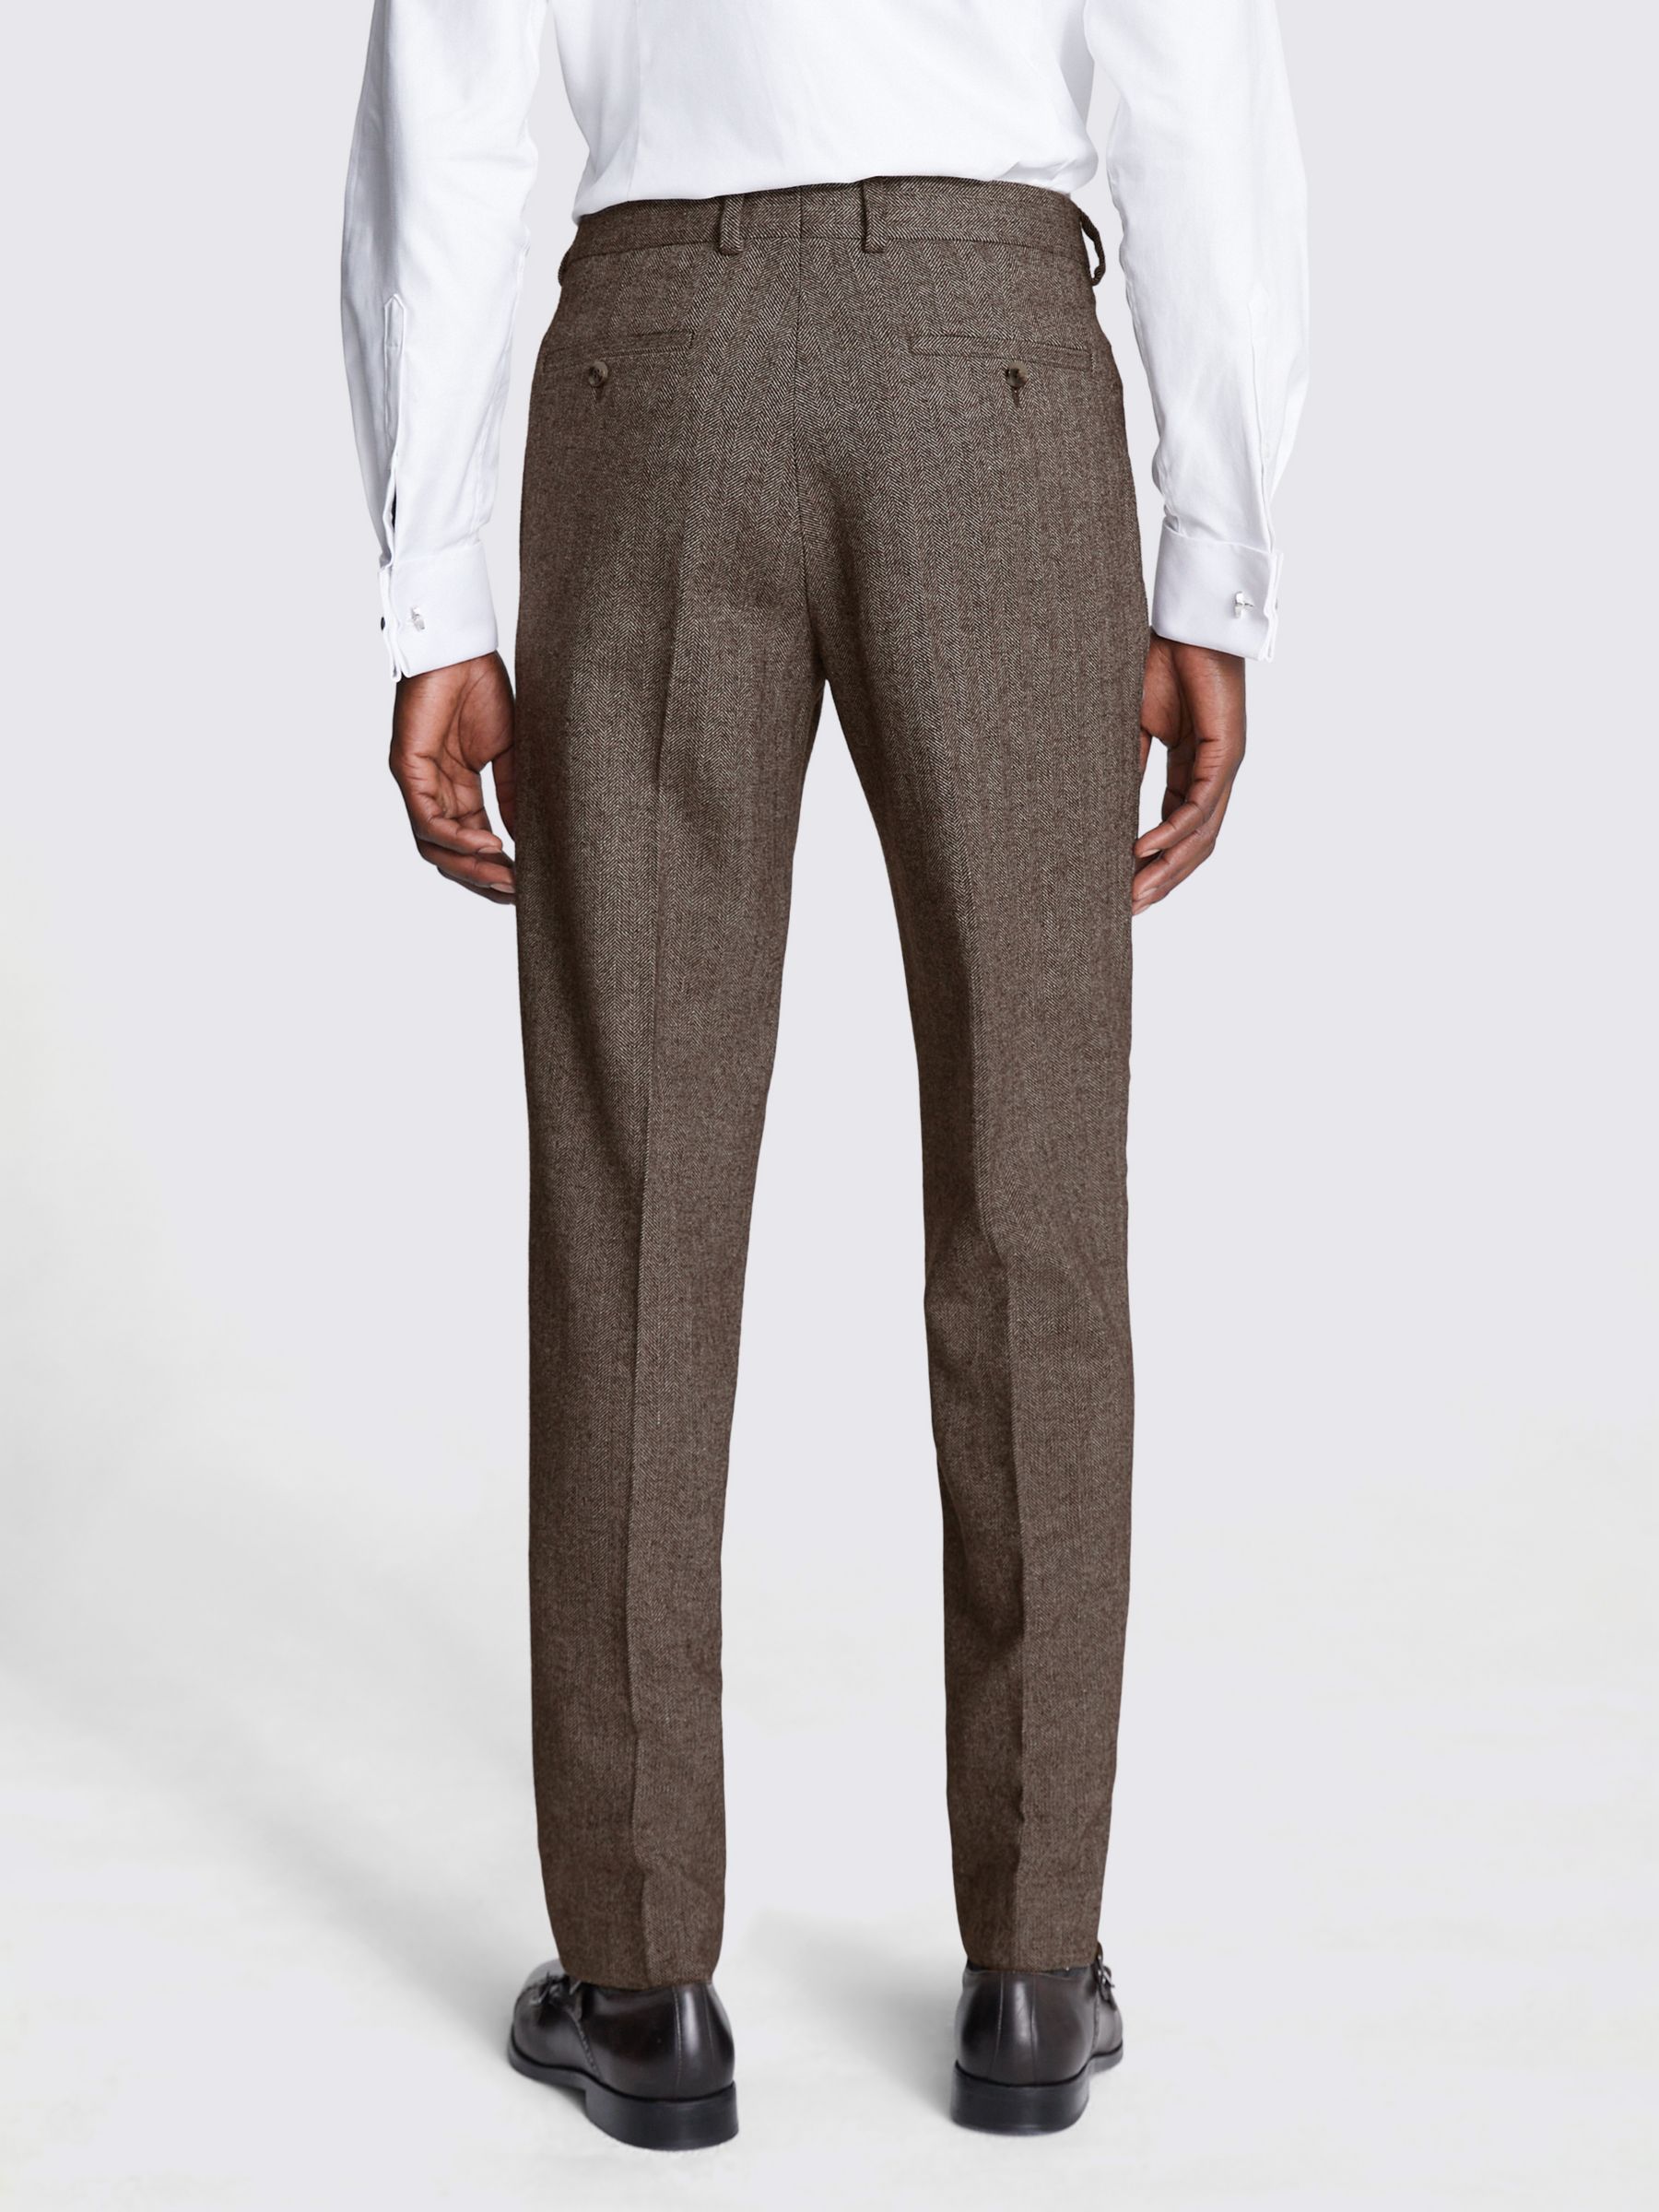 Moss Slim Fit Tweed Trousers, Brown at John Lewis & Partners